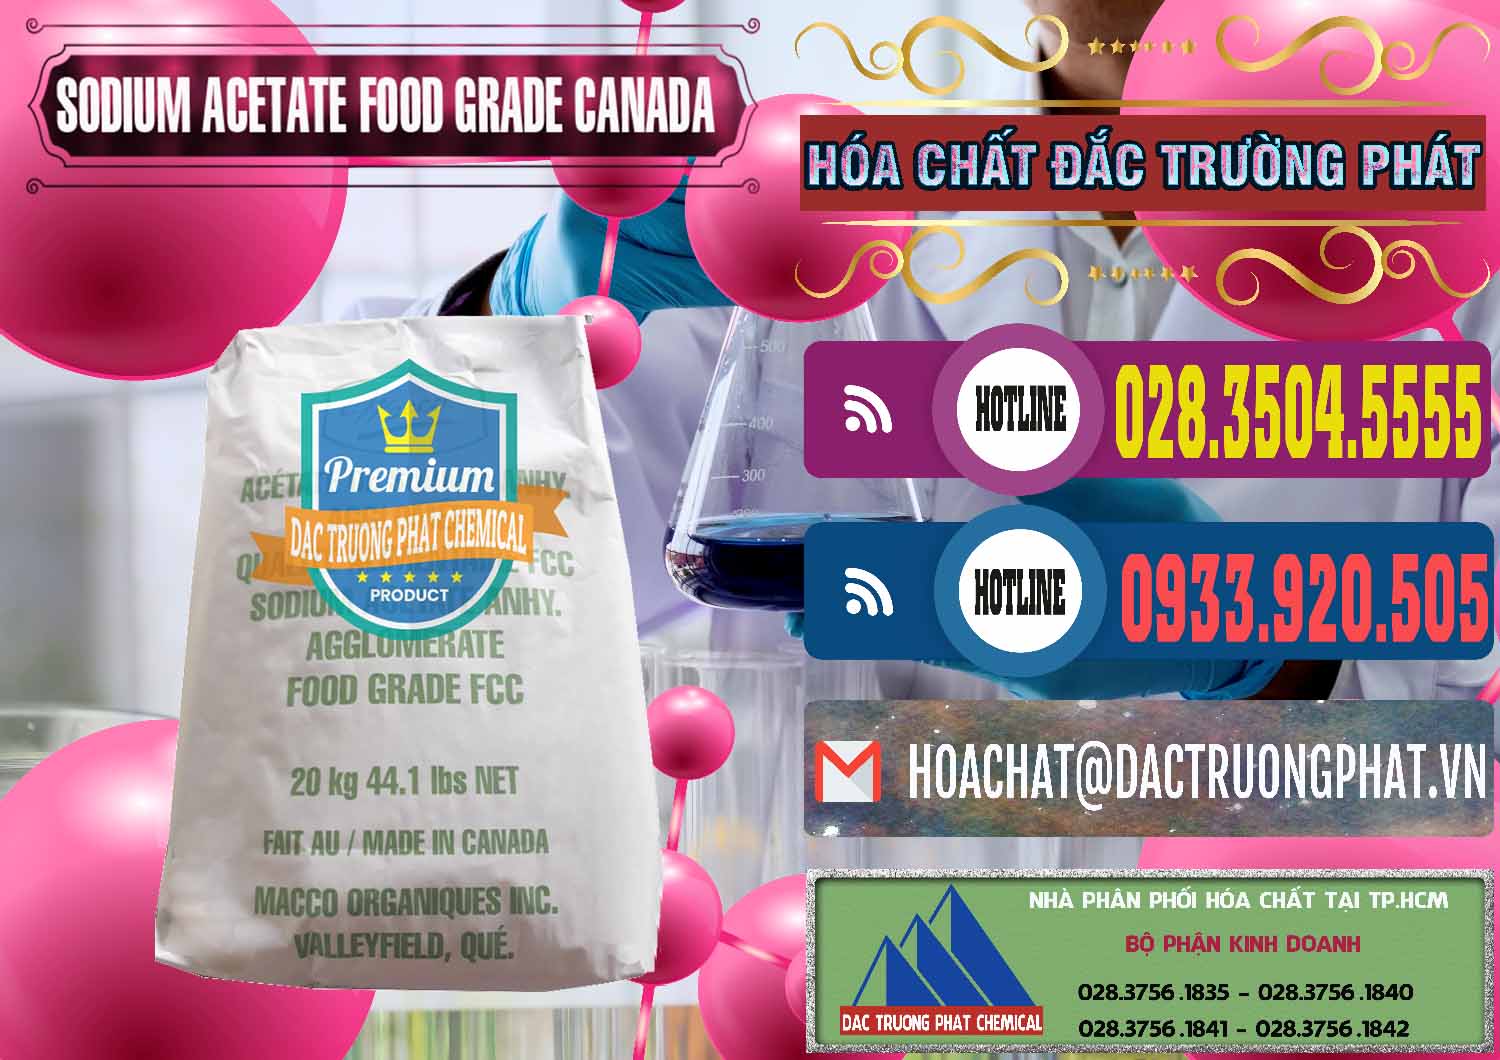 Cty chuyên phân phối và bán Sodium Acetate - Natri Acetate Food Grade Canada - 0282 - Nơi chuyên phân phối ( bán ) hóa chất tại TP.HCM - muabanhoachat.com.vn